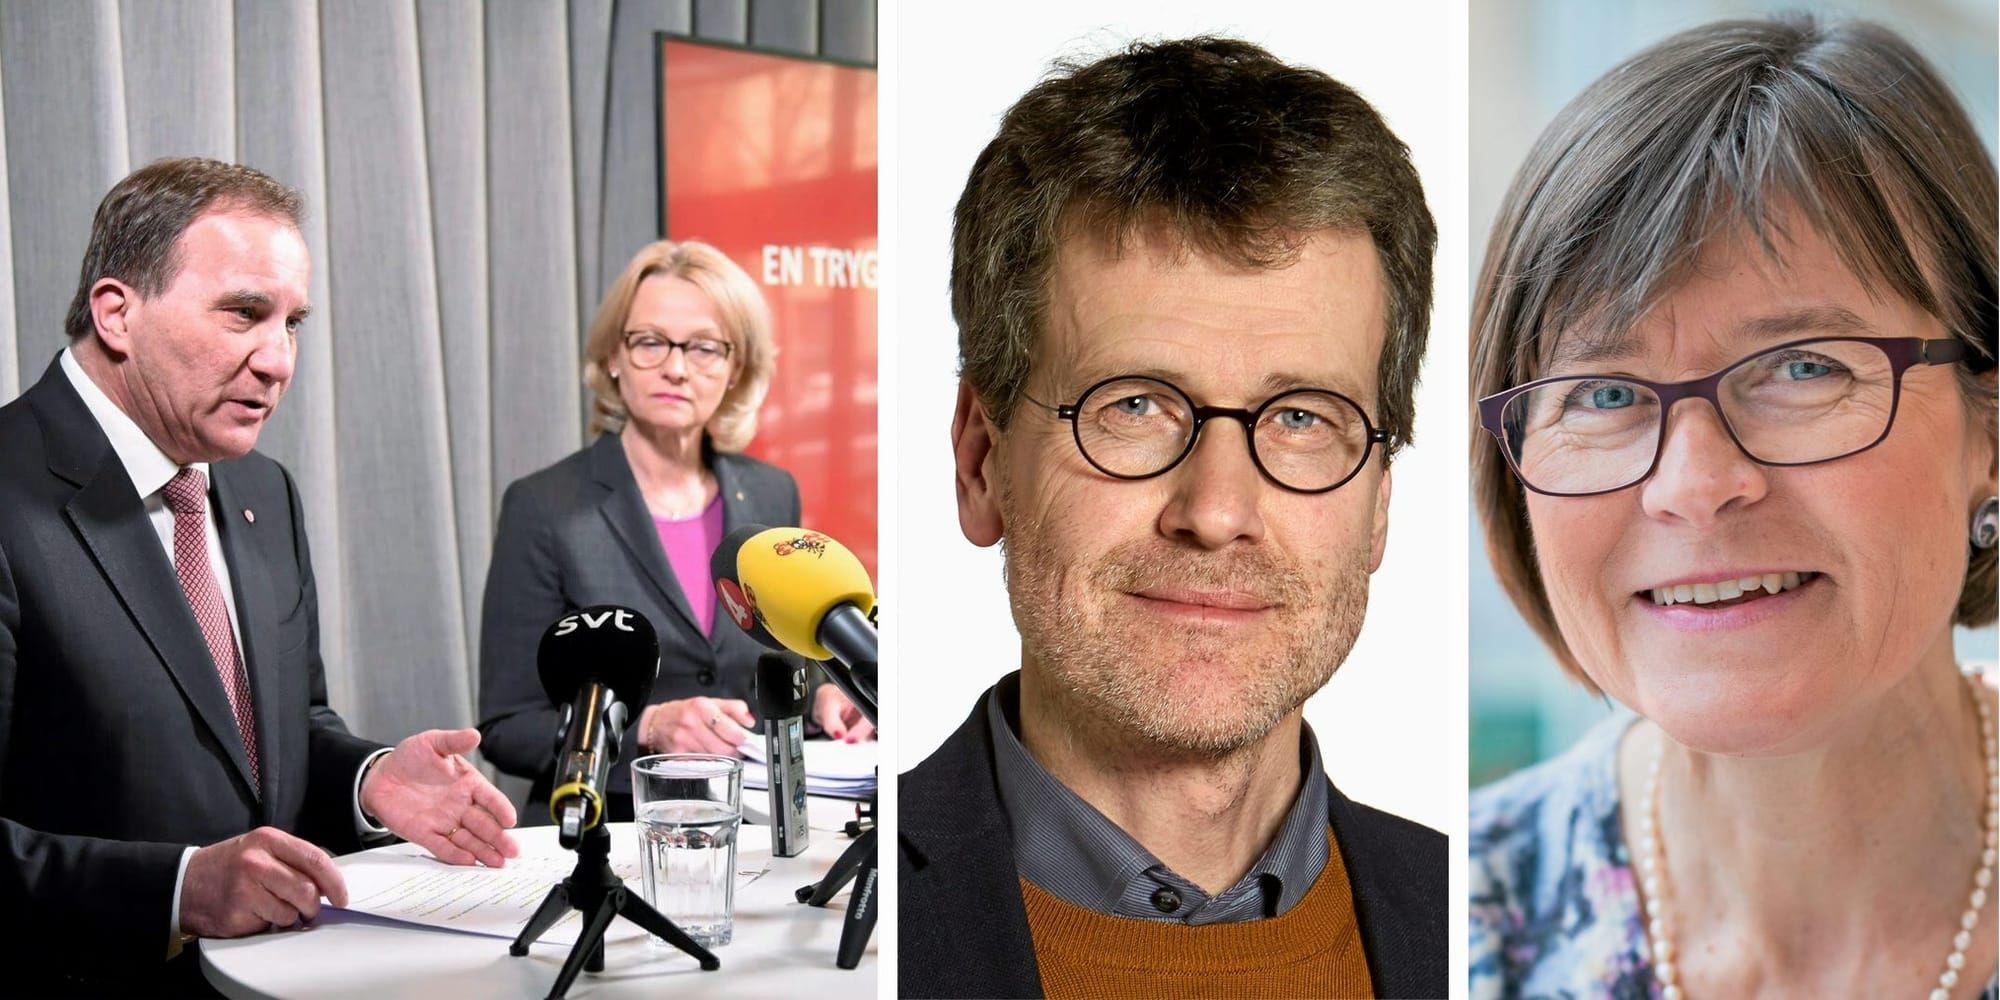 Vi hoppas nu att solidariska socialdemokrater står upp för ett medmänskligt Sverige, och fördömer socialdemokraternas nya SD-politik. Besvikna socialdemokrater, välkomna till Miljöpartiet, skriver Ulf Kamne (MP) och Karin Pleijel (MP).